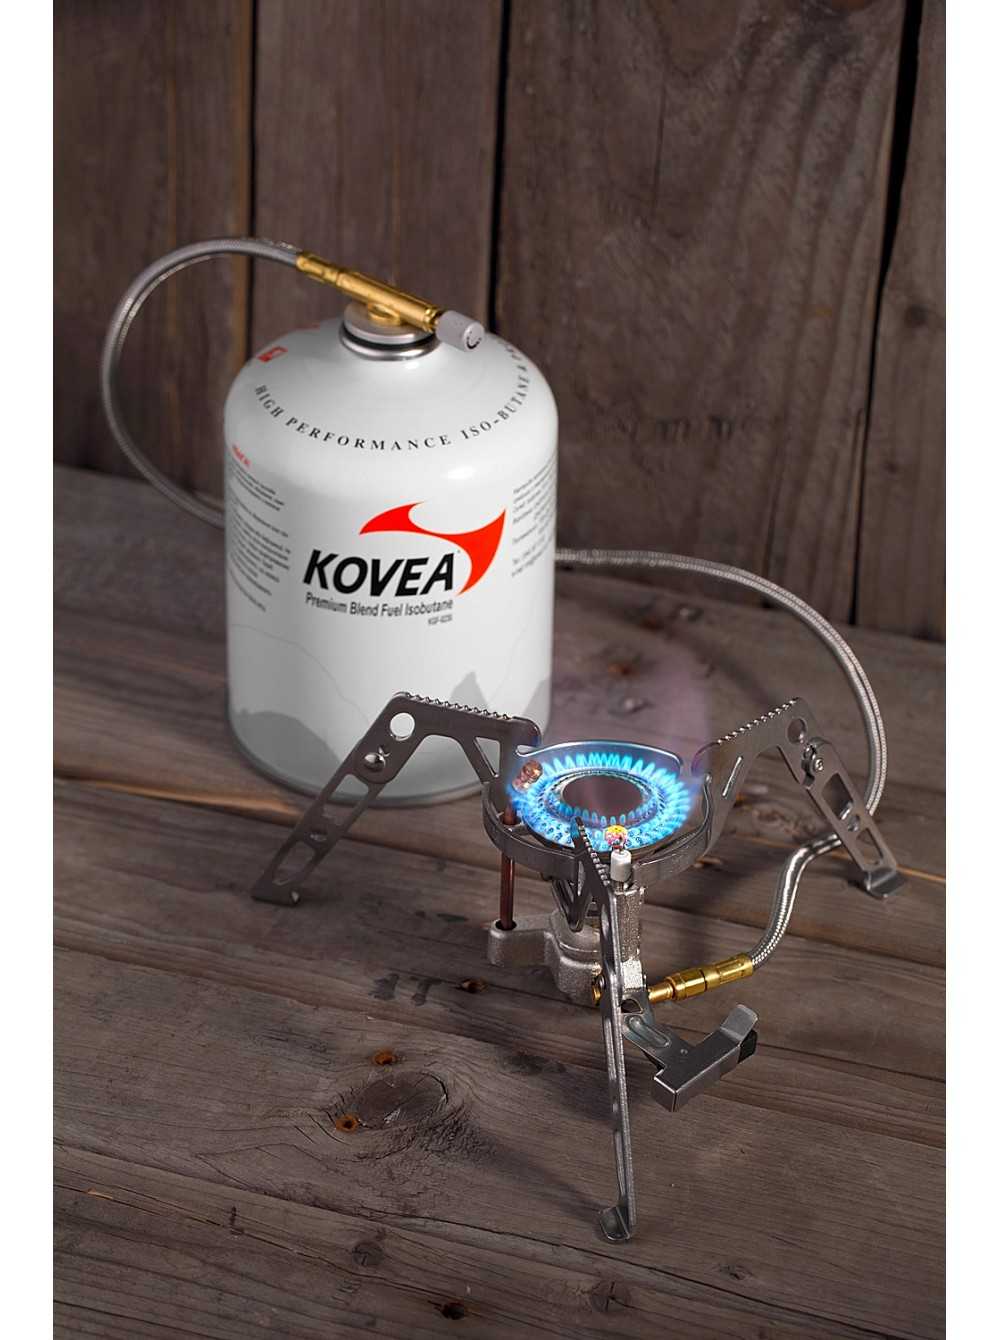 Газовая плитка kovea handy sun (kgh-1609) купить - санкт-петербург по акционной цене , отзывы и обзоры.